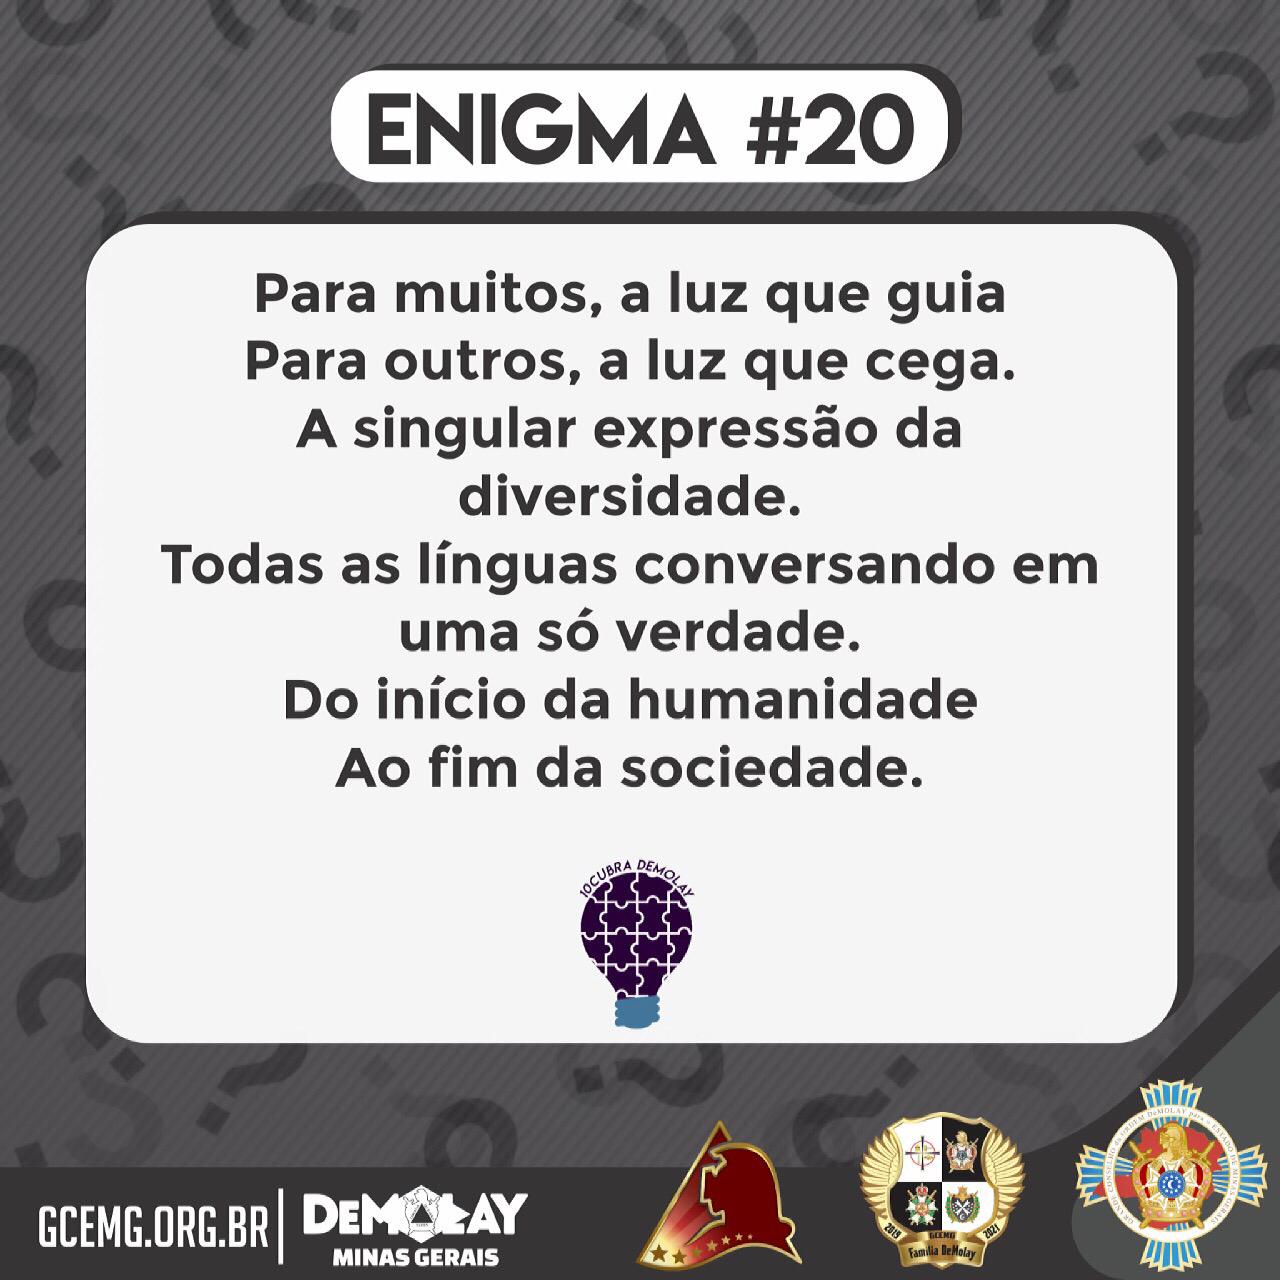 10cubra DeMolay – Enigma #20